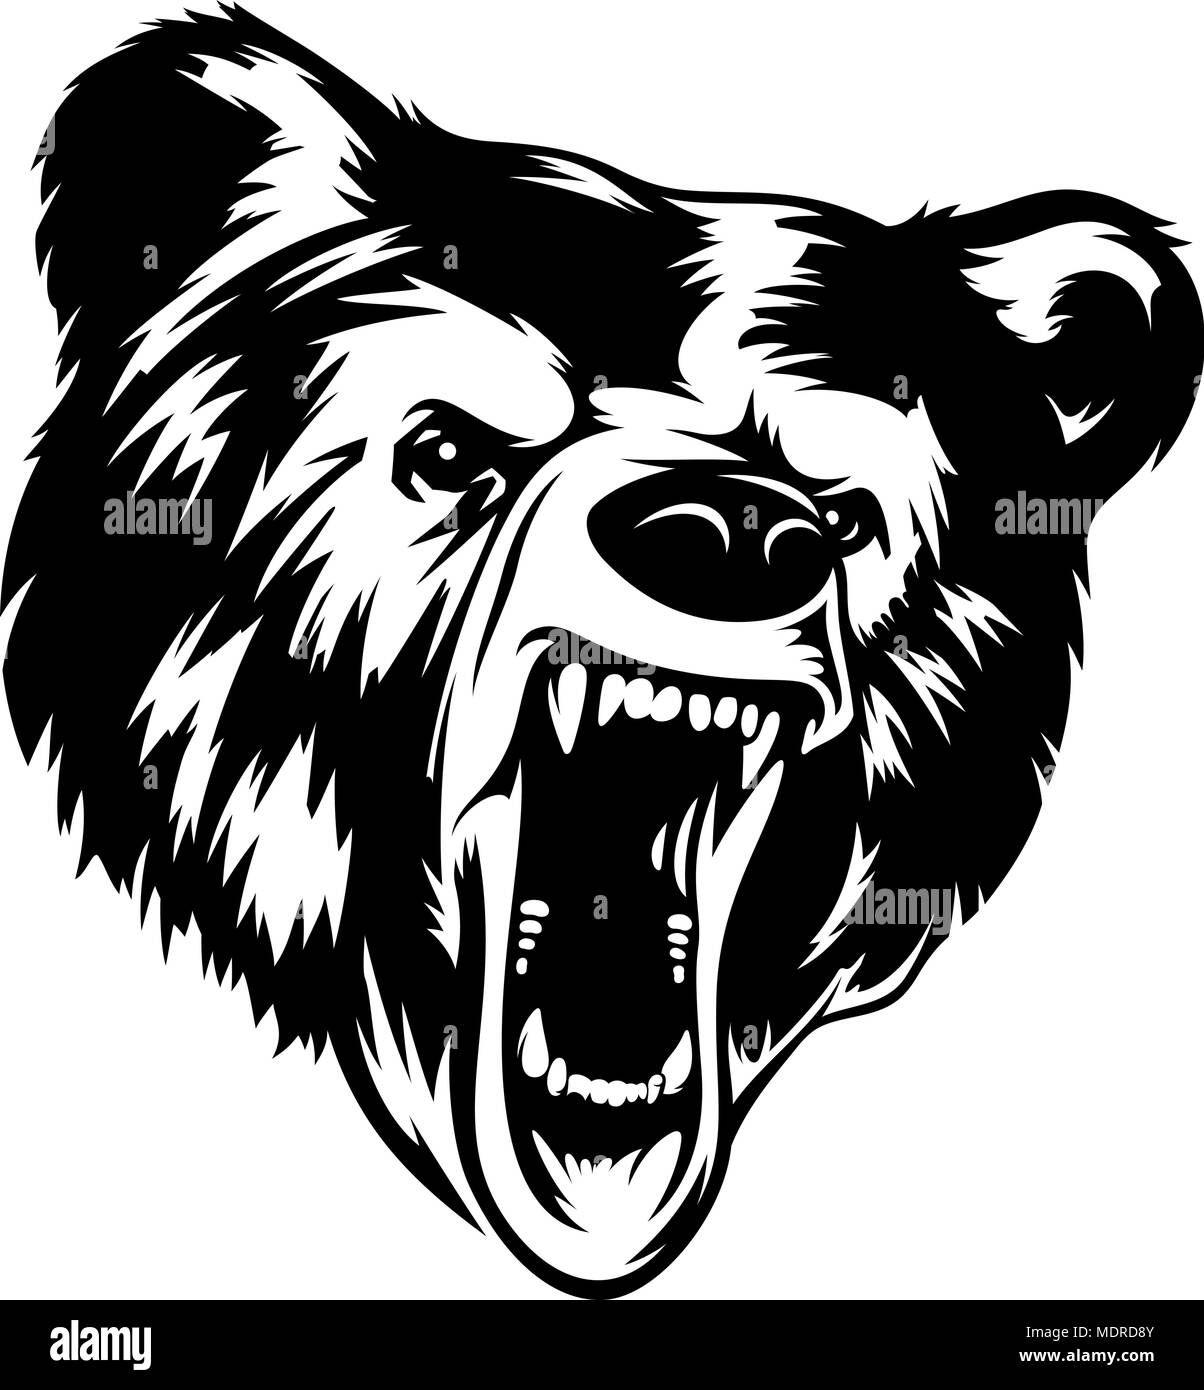 Tête d'ours noir et blanc illustration vectorielle. Il peut être utilisé comme une impression sur T-shirts et autres vêtements Illustration de Vecteur